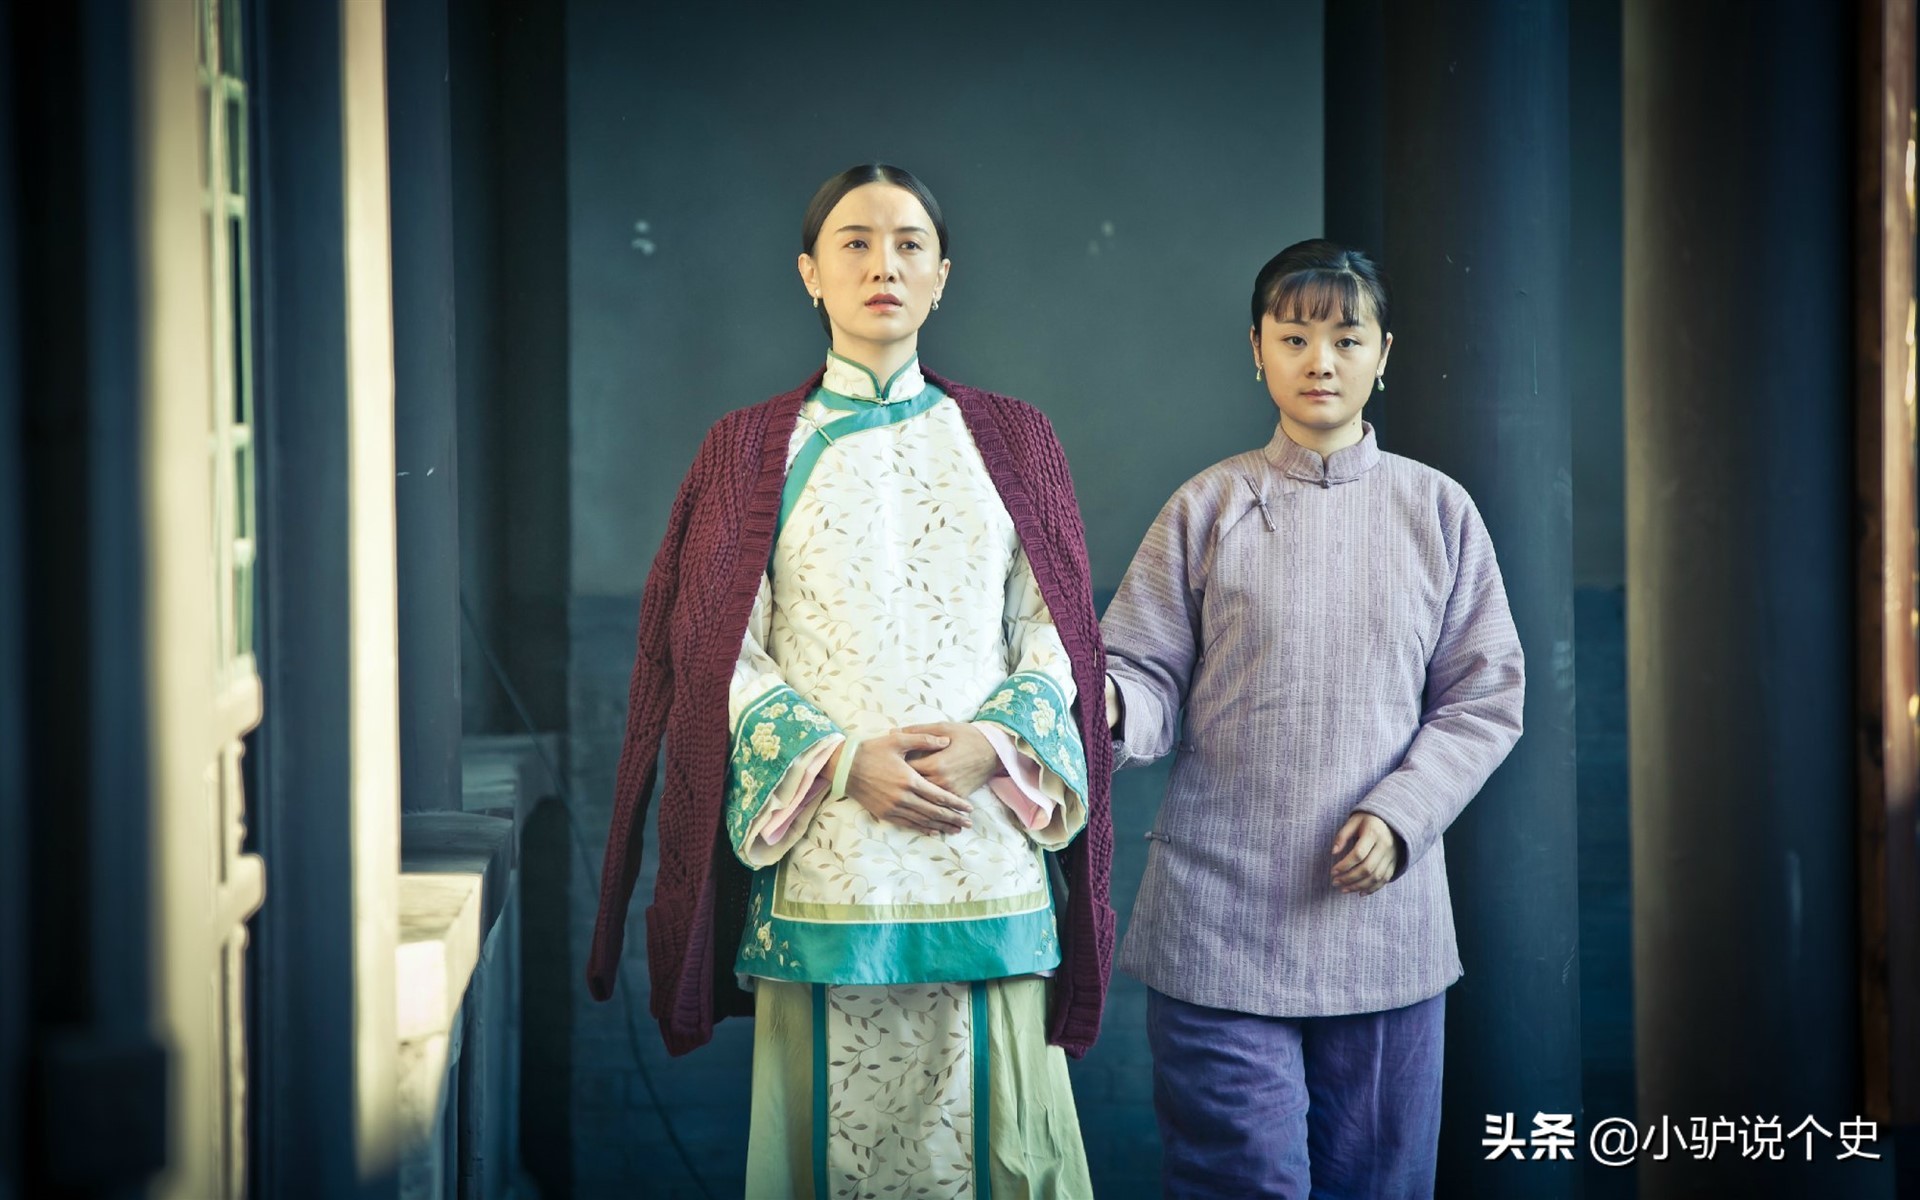 《蝶梦百年》——上海影后胡蝶影像历史珍藏展，地点